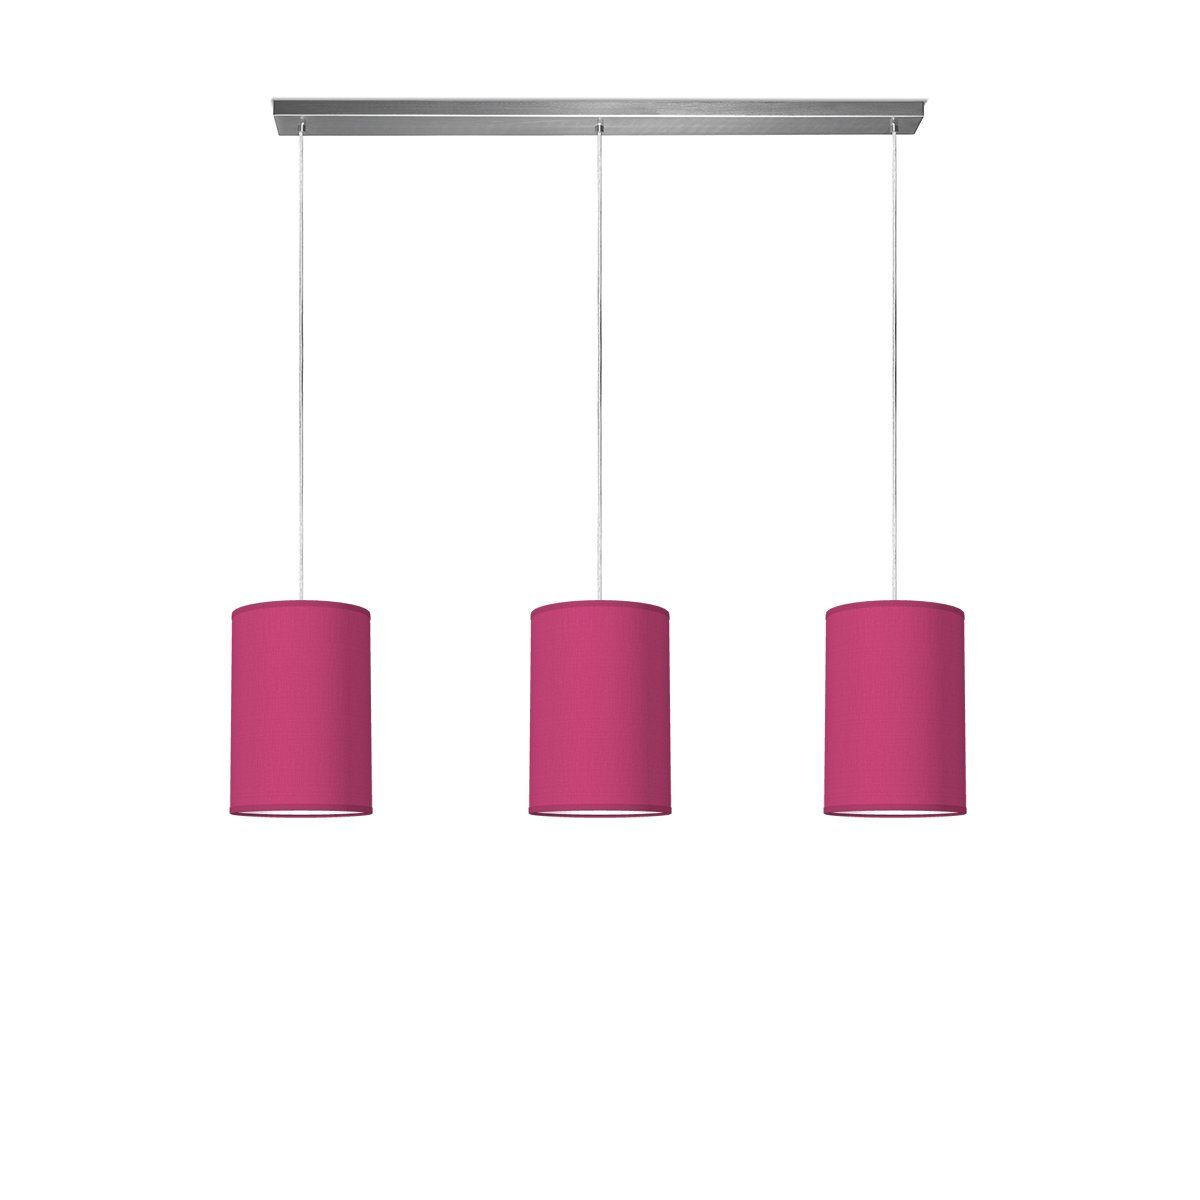 Light depot - hanglamp beam 3 tube Ø 20 cm - roze - Outlet